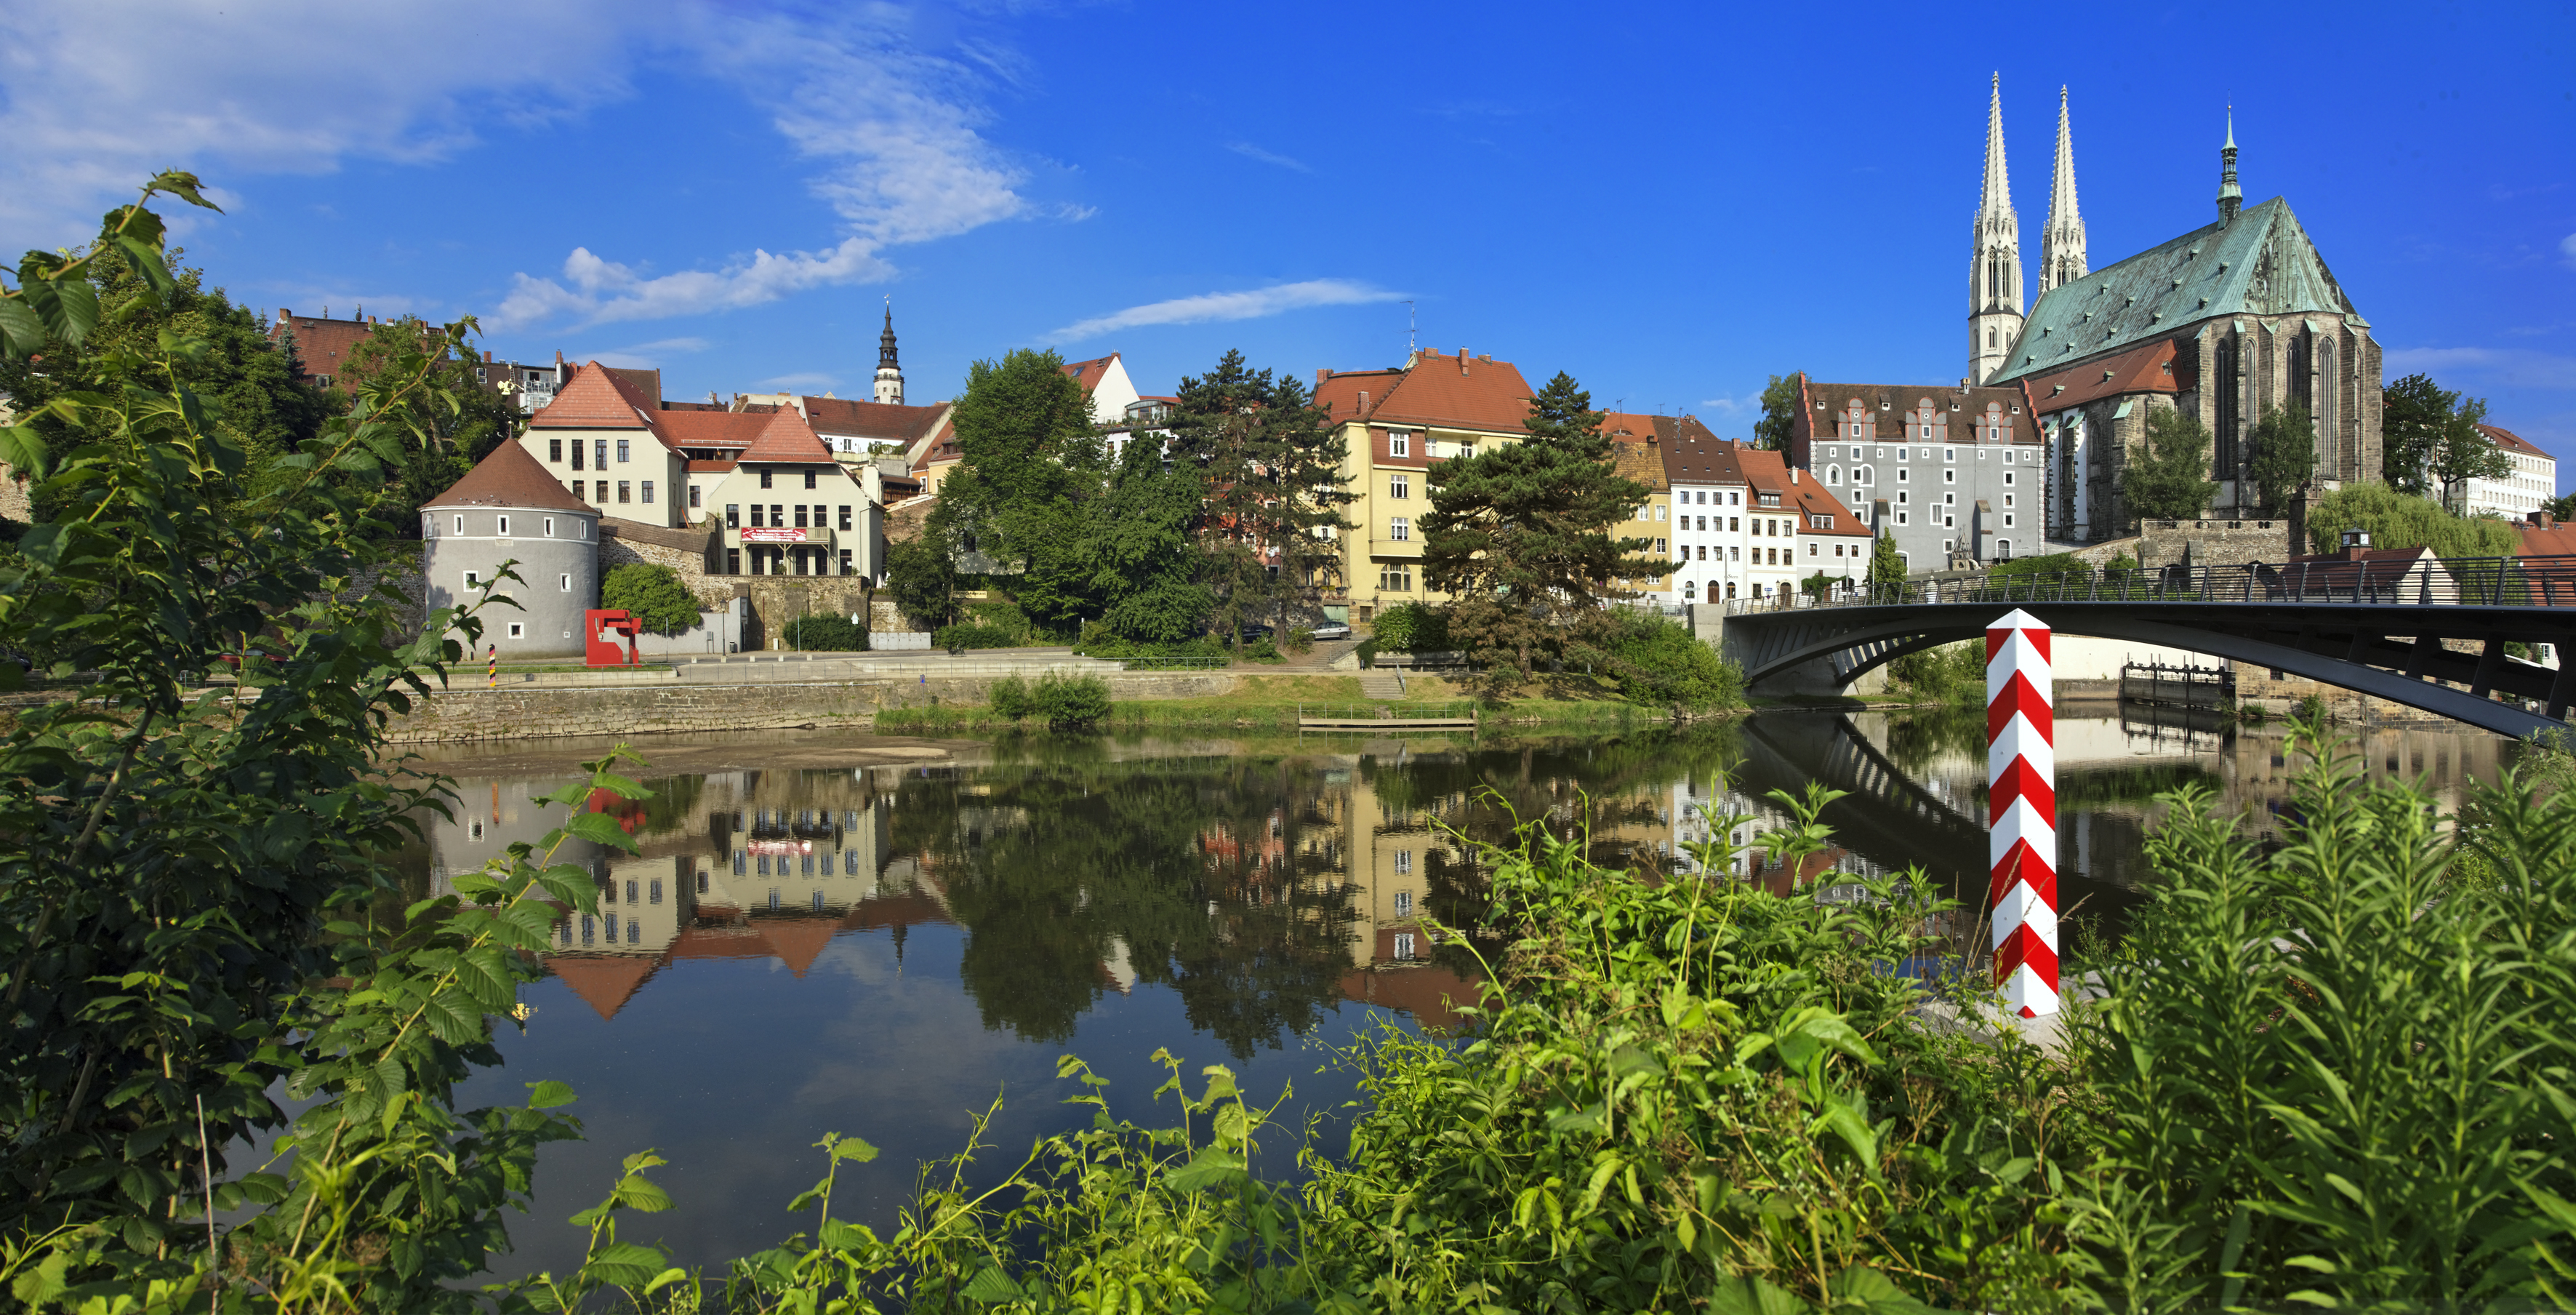 Görlitz bezien vanaf de Poolse kant van de rivier